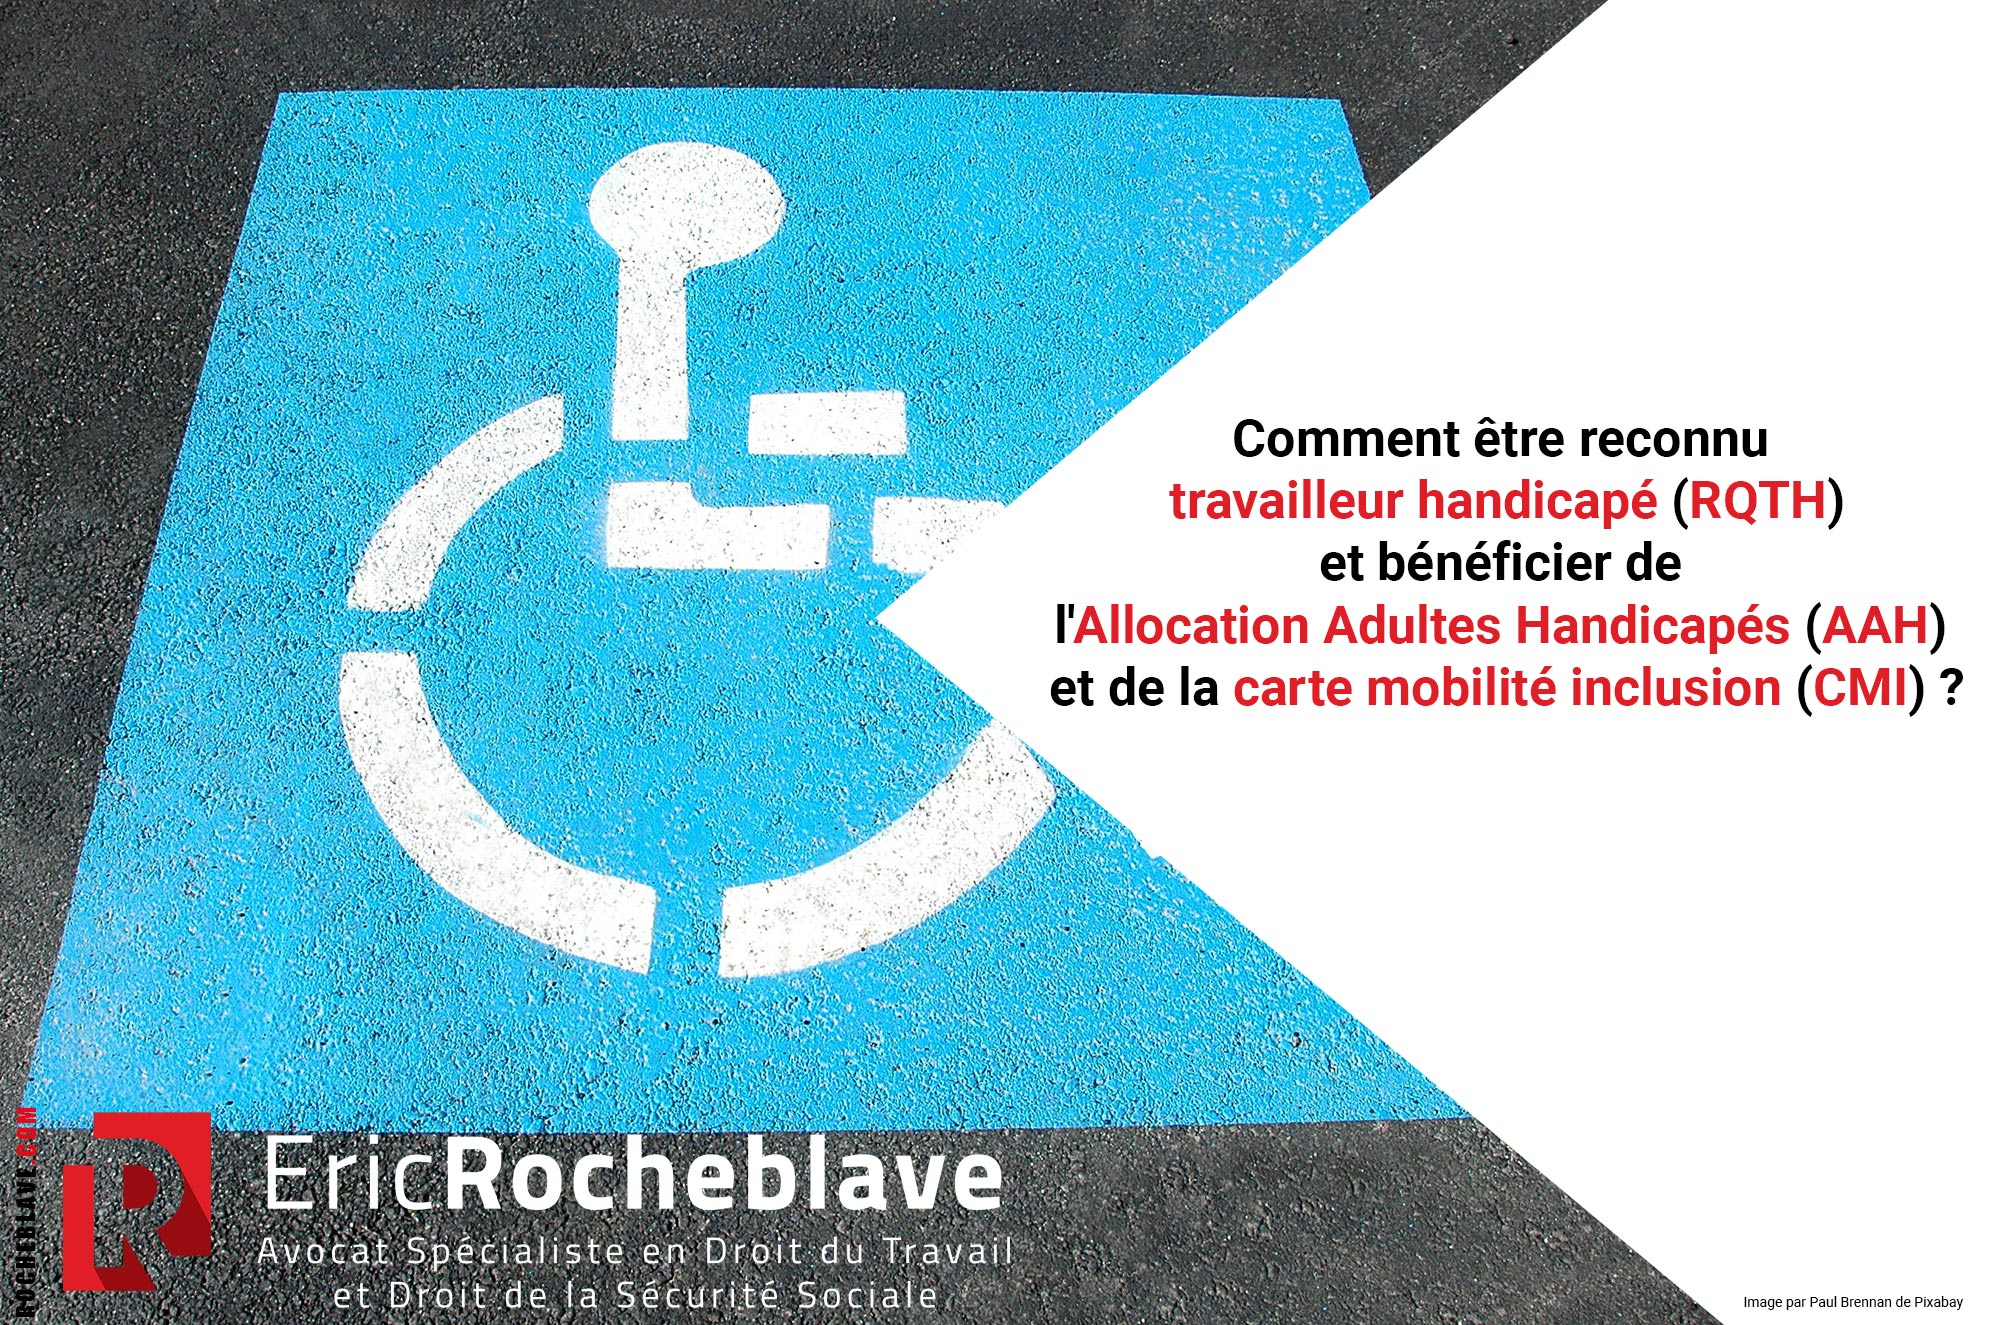 Comment être reconnu travailleur handicapé (RQTH) et bénéficier de l’Allocation Adultes Handicapés (AAH) et de la carte mobilité inclusion (CMI) ?